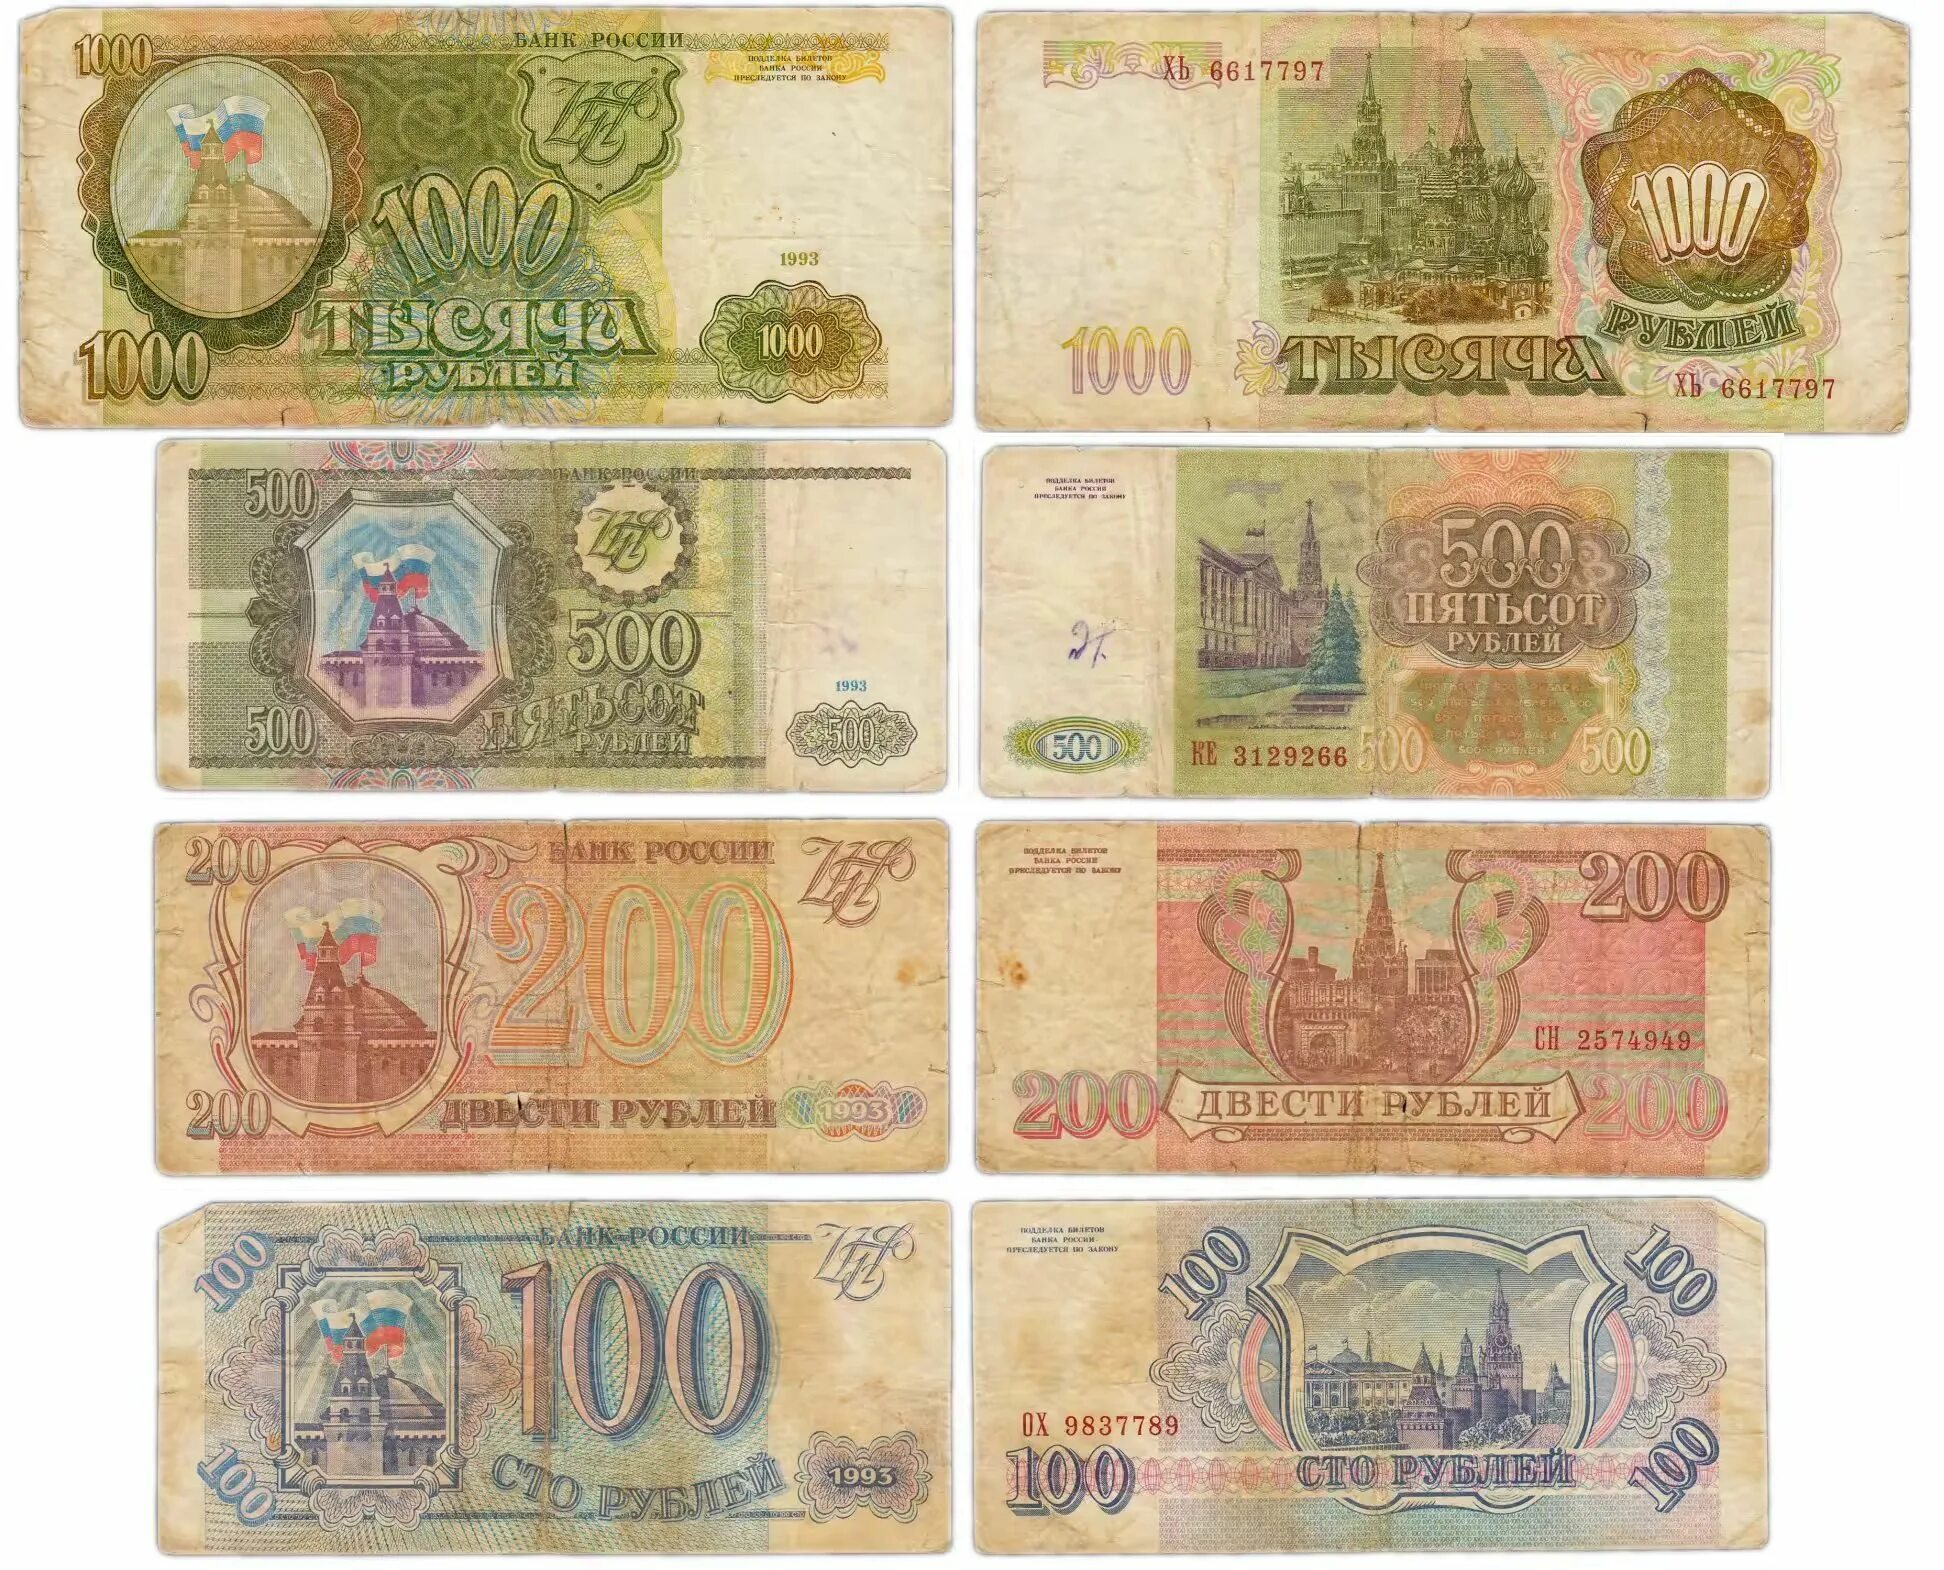 100 Рублей 1993 года. Купюры 100, 200, 500 рублей 1993 года. Банкноты 100 рублей 1993. СТО рублей купюра 1993.